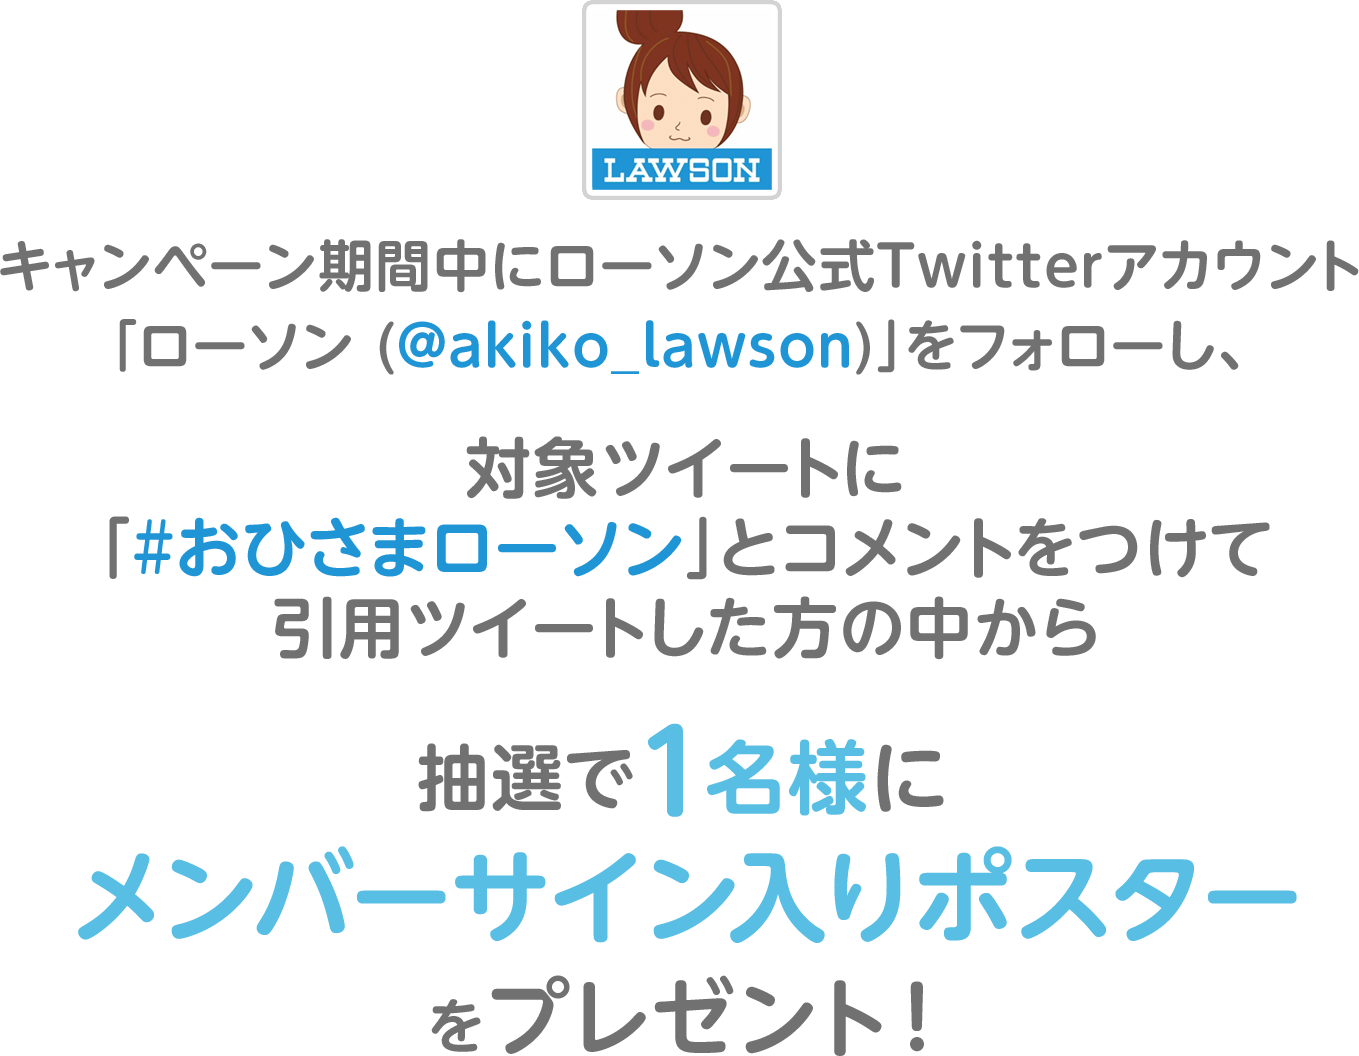 キャンペーン期間中にローソン公式Twitterアカウント「ローソン (@akiko_lawson)」をフォローし、対象ツイートに「#おひさまローソン」とコメントをつけて引用ツイートした方の中から抽選で1名様にメンバーサイン入りポスターをプレゼント！